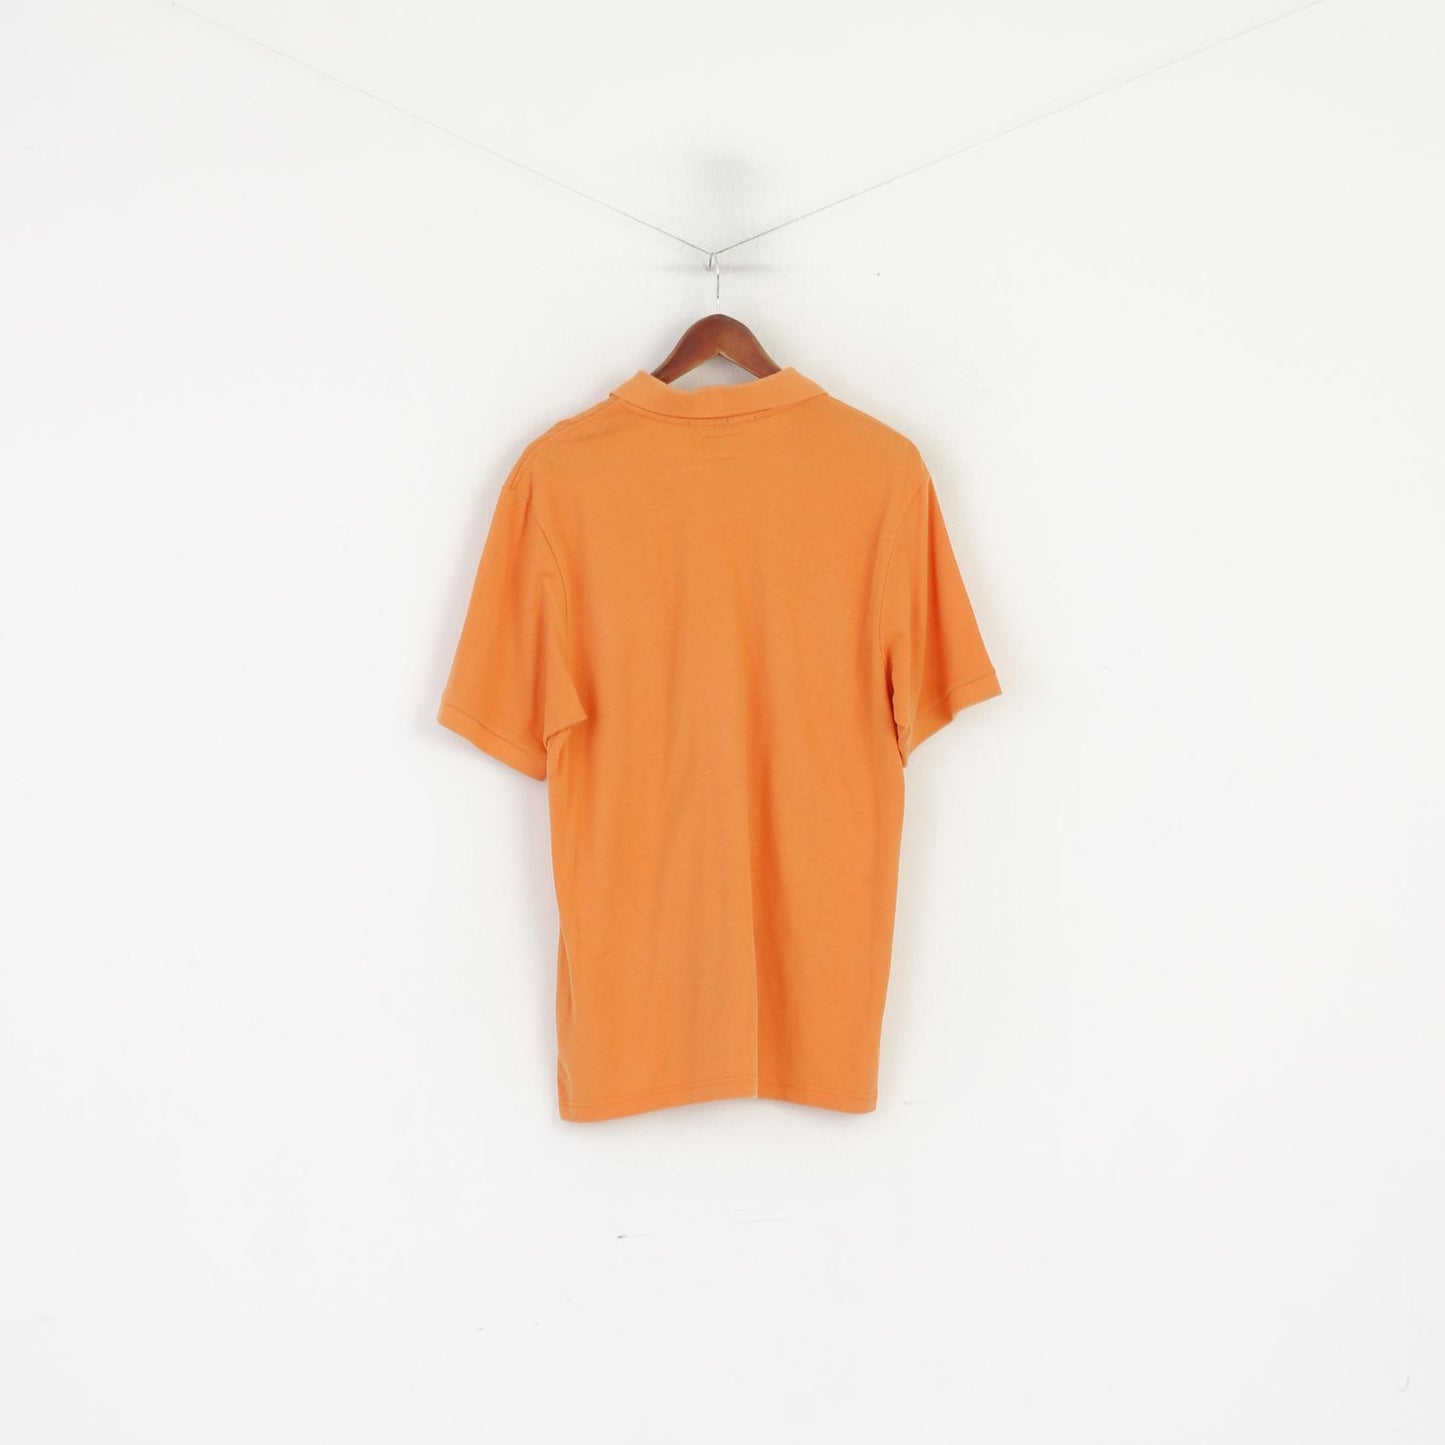 Polo Champion da uomo L, top estivo classico in cotone arancione, vestibilità facile, tinta unita vintage